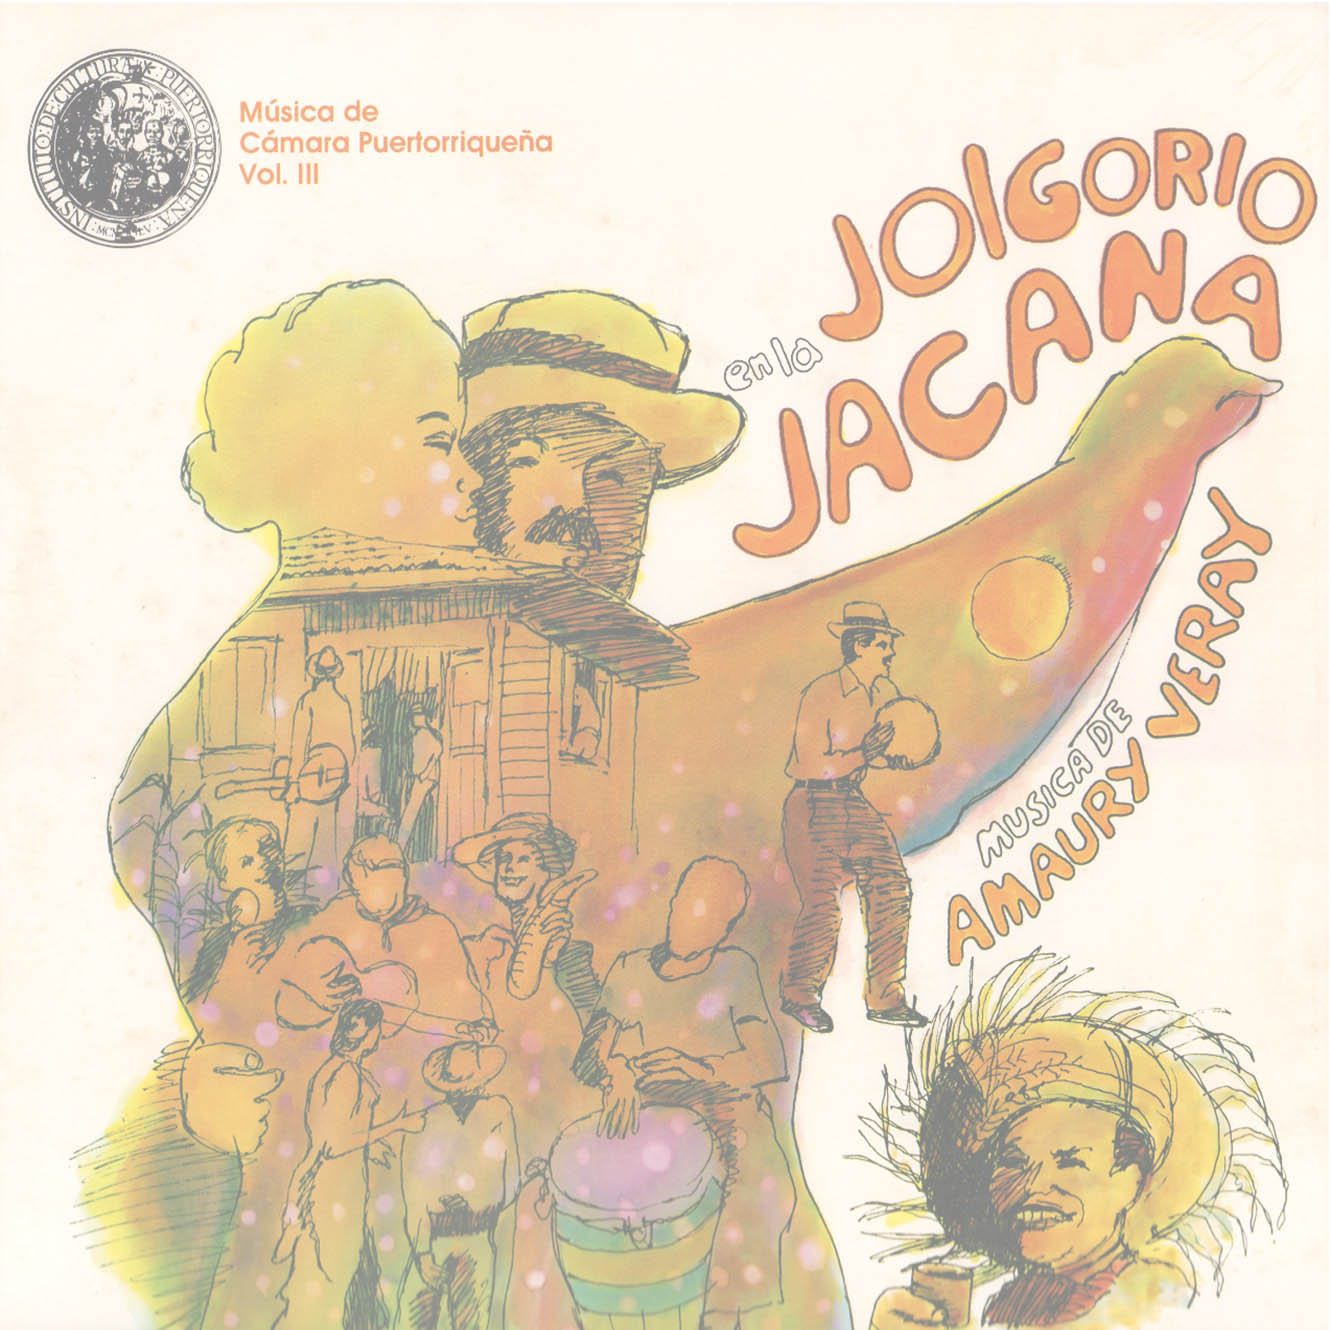 Jolgorio en la Jácana - Música de Amaury Veray